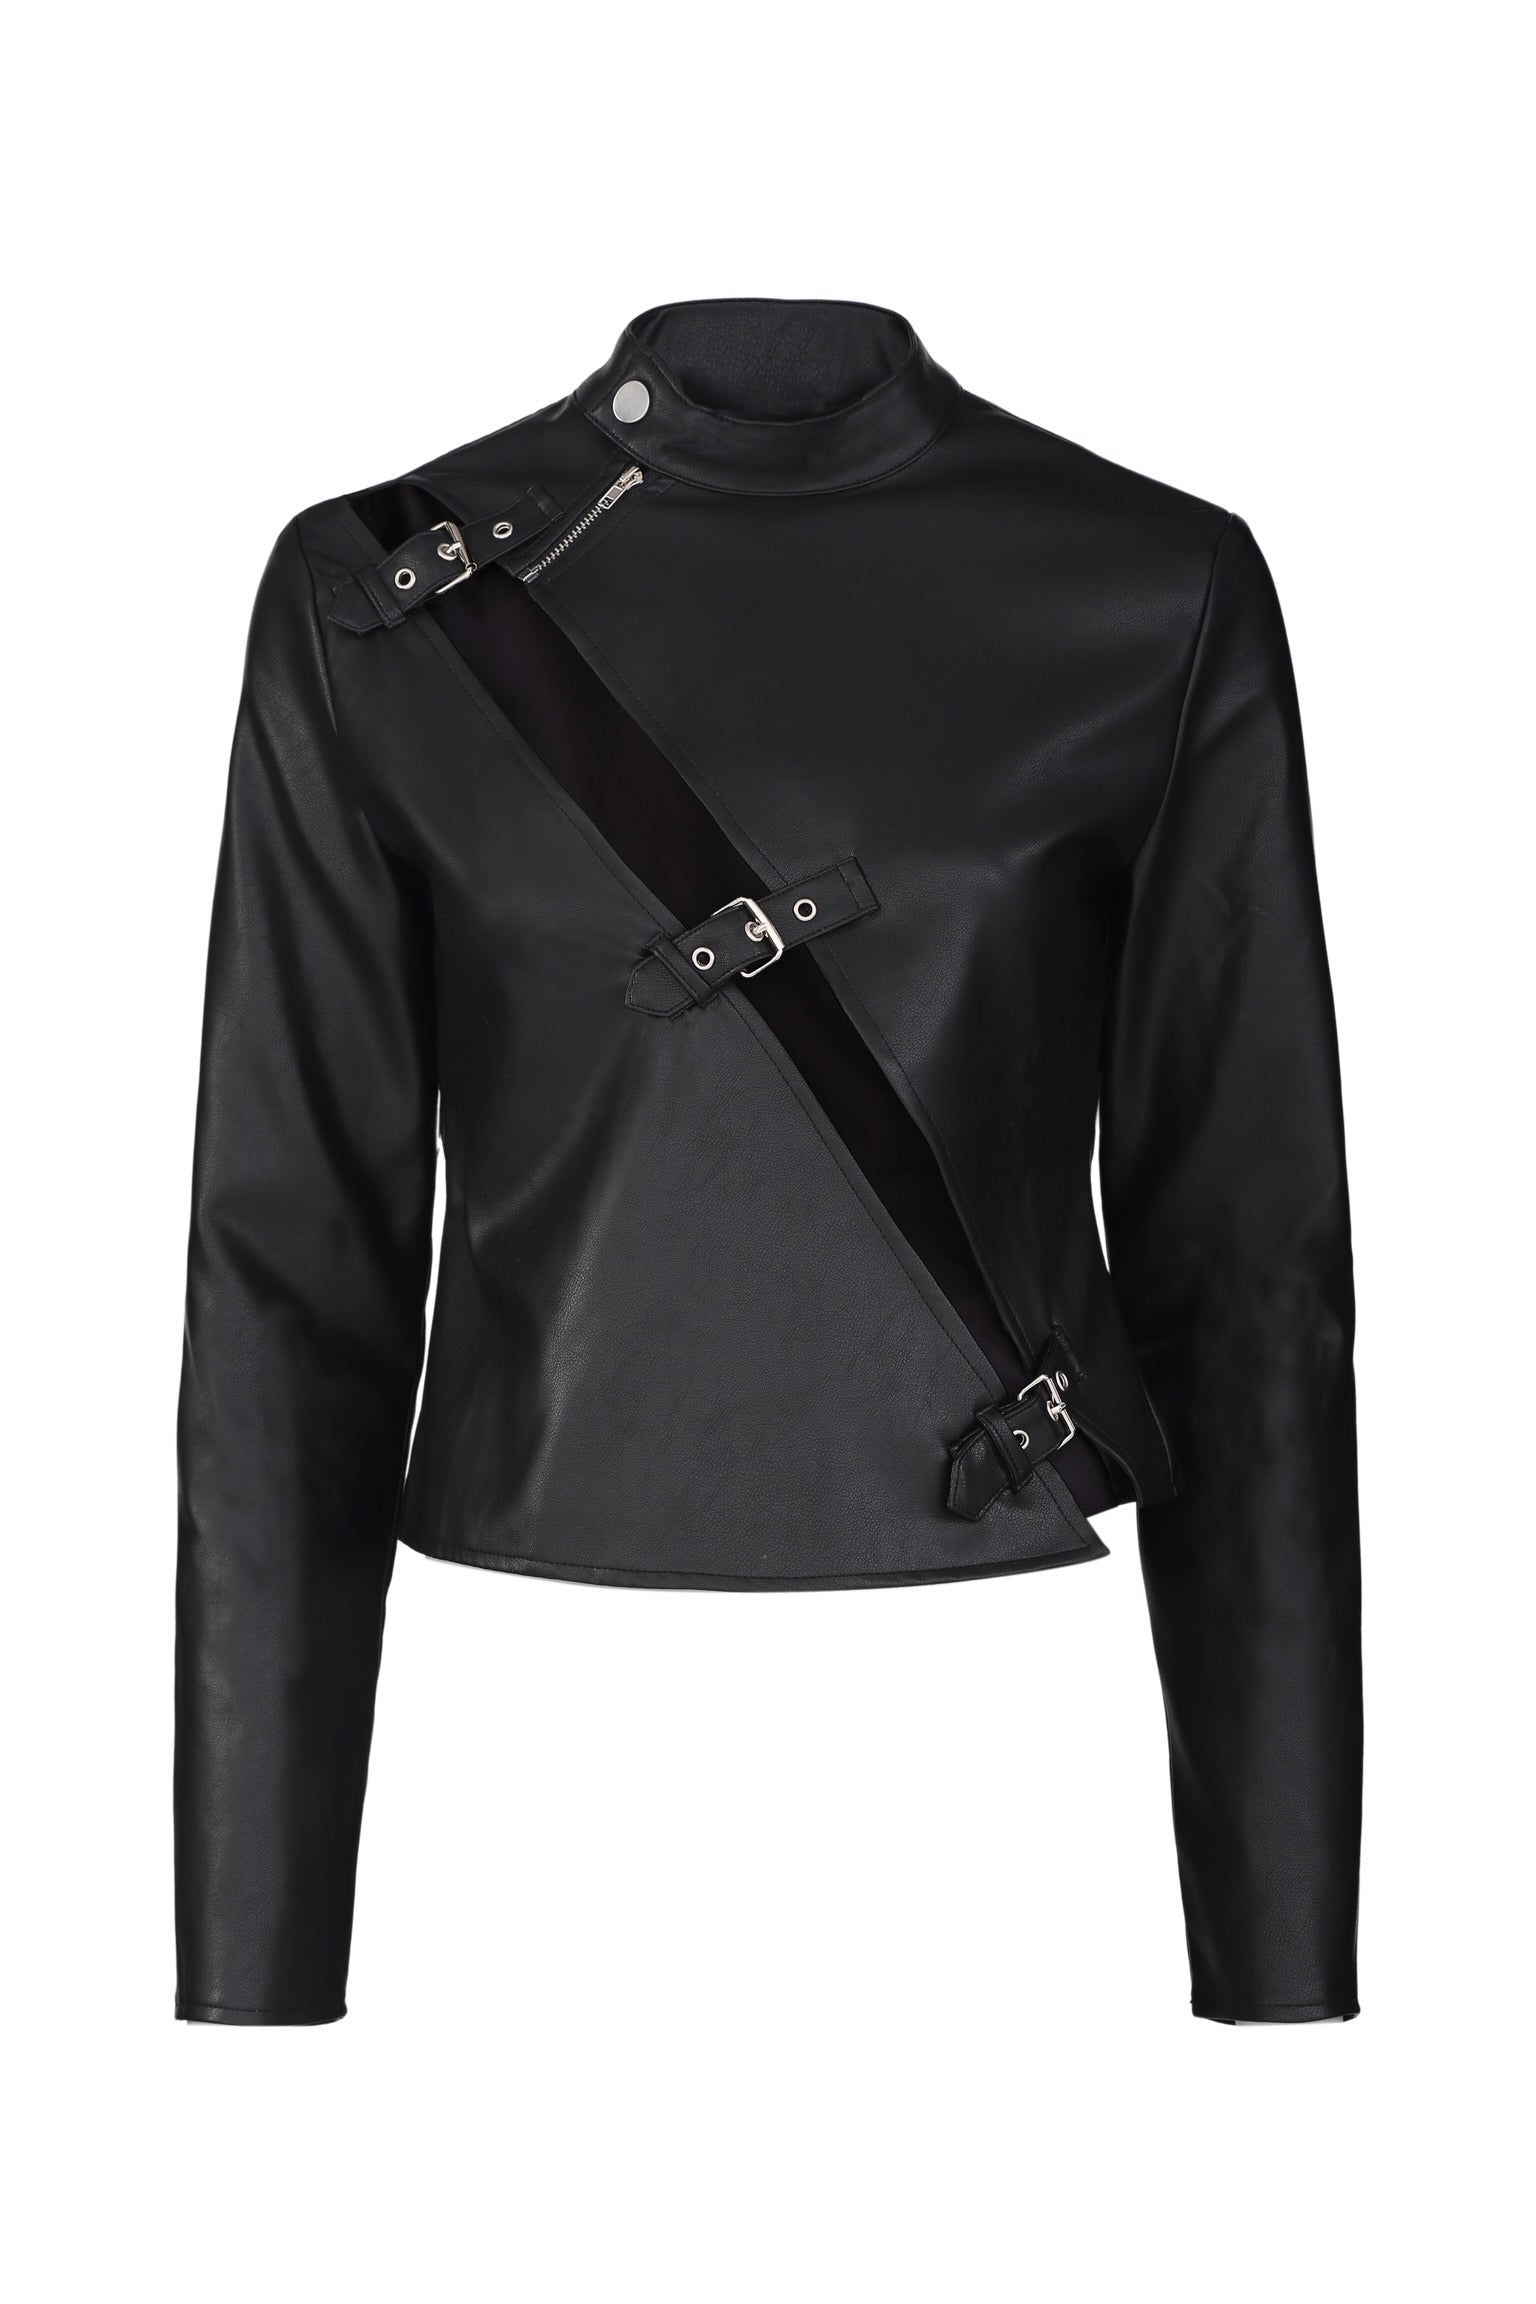 Gina Krischenheiter's Black Leather Jacket